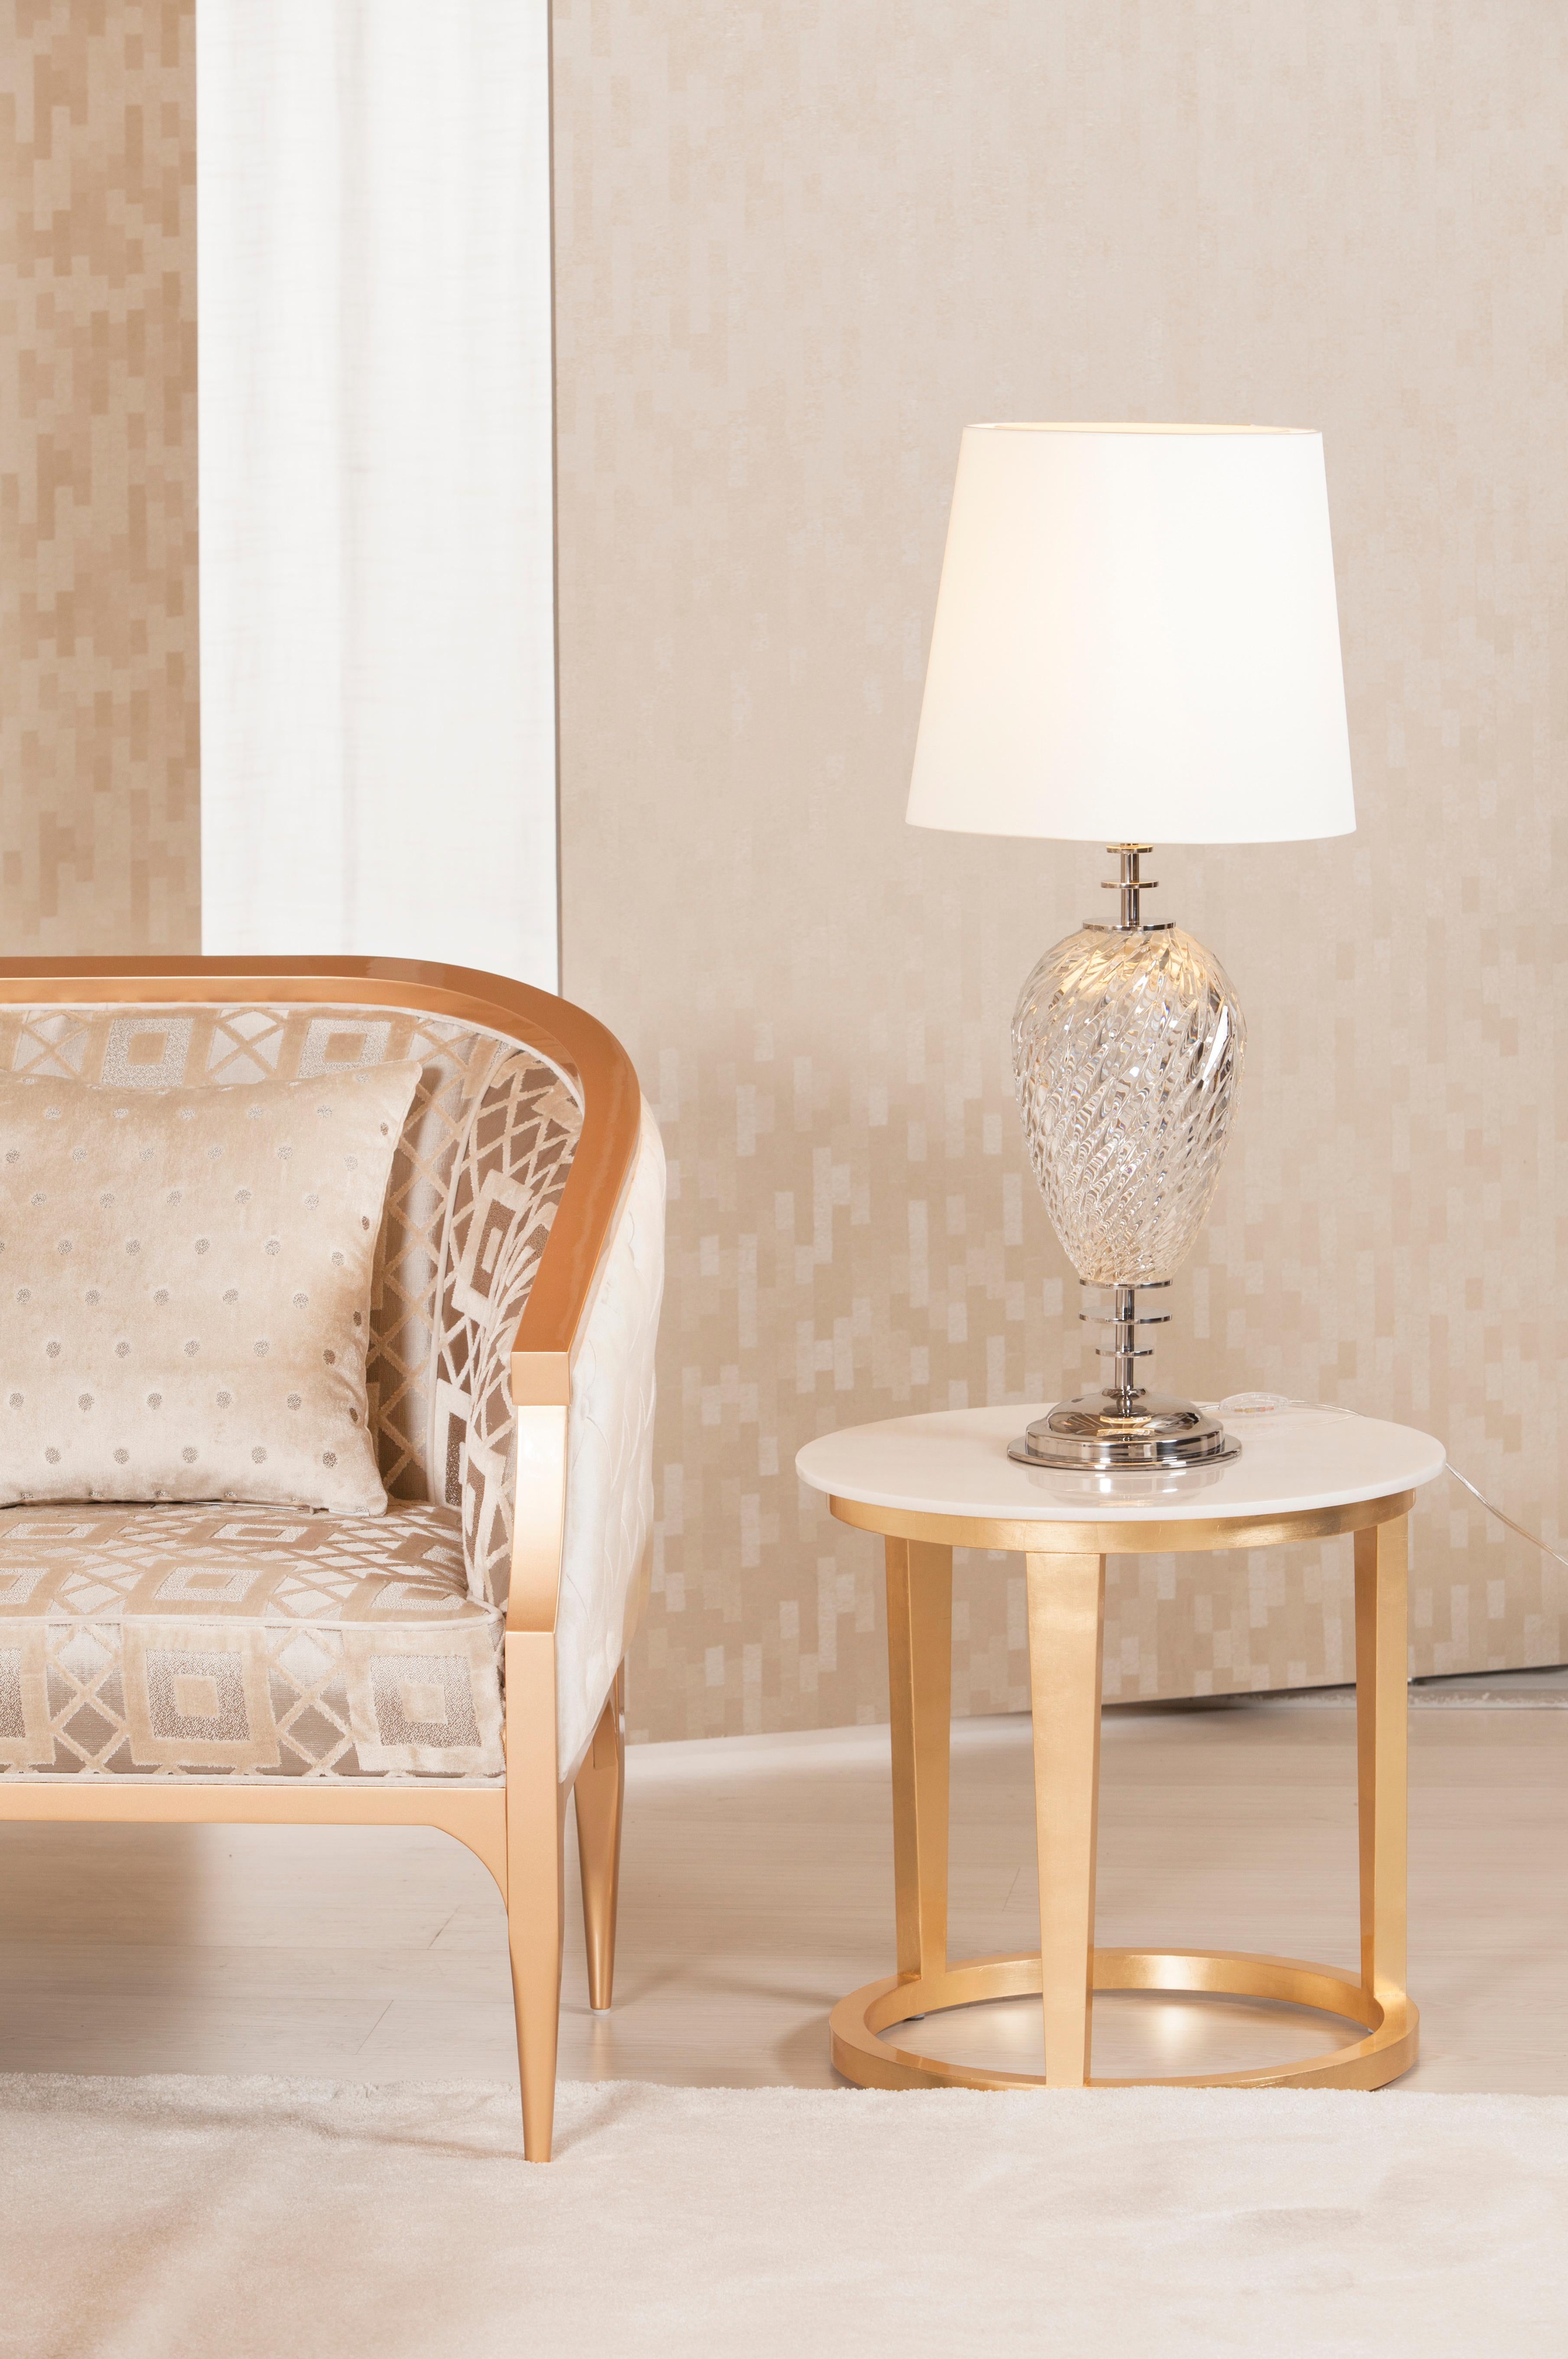 Marques Tischleuchte, Modern Collection'S, handgefertigt in Portugal - Europa von GF Modern.

Die luxuriöse Art-Déco-Tischleuchte Marques schafft das unterschwellige Ambiente für außergewöhnliches Wohnen.

Das handgefertigte Kristalldetail